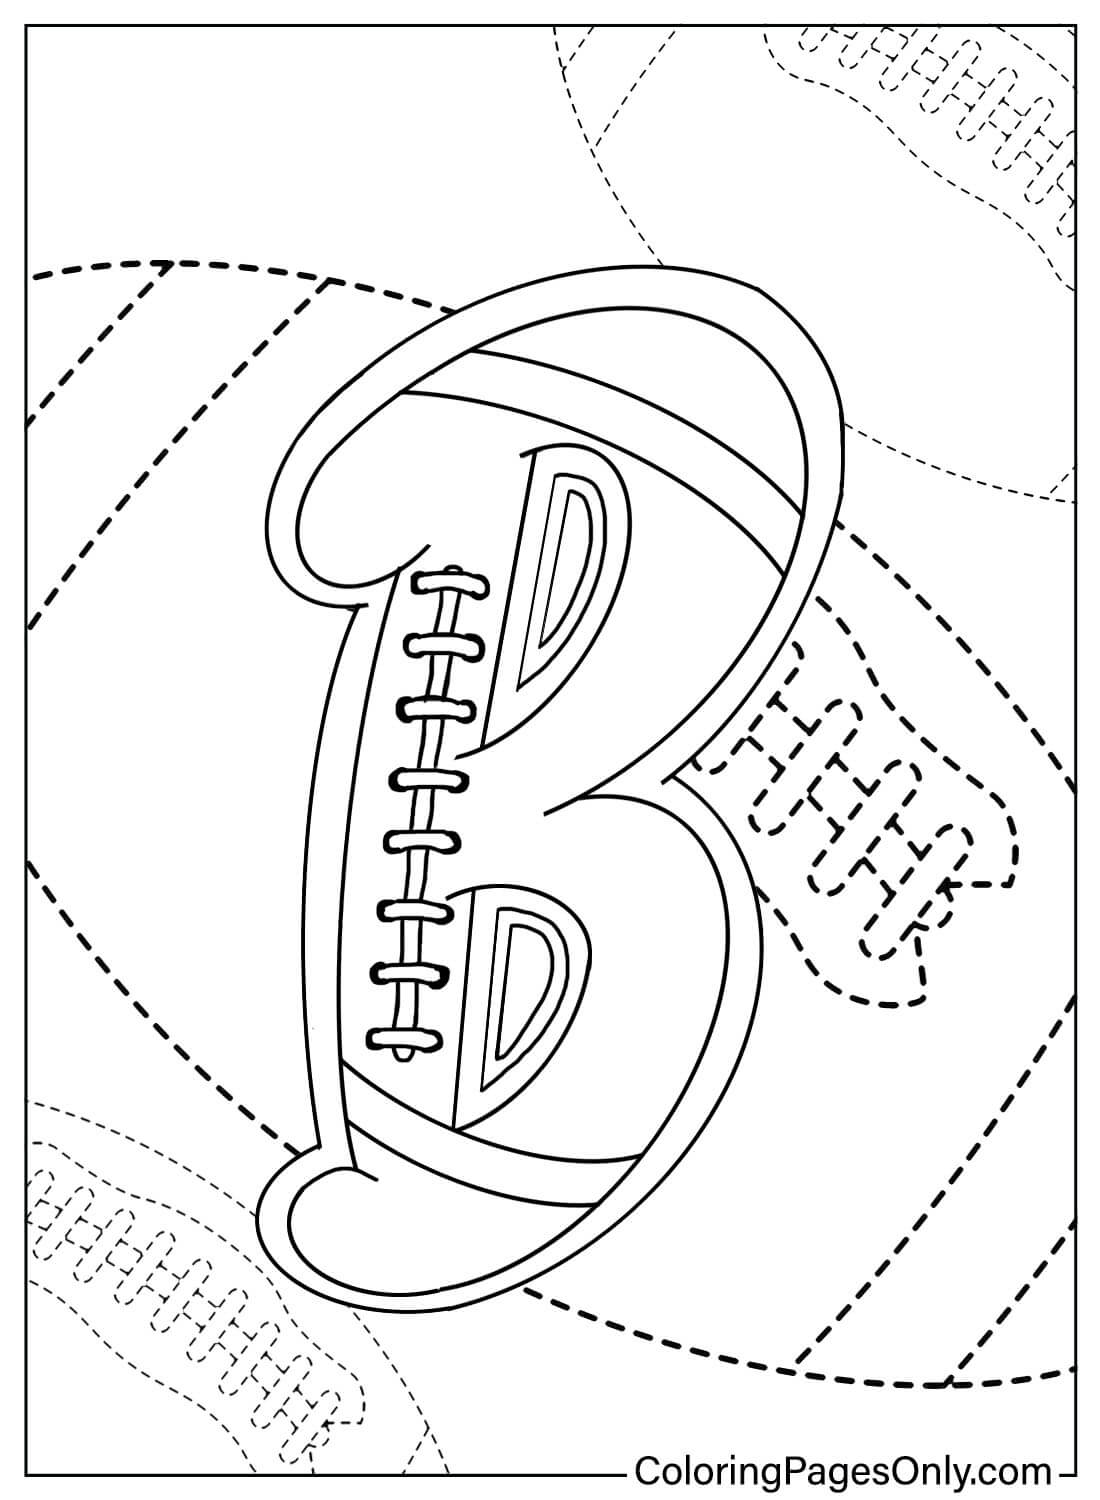 Página para colorir da letra B do alfabeto esportivo